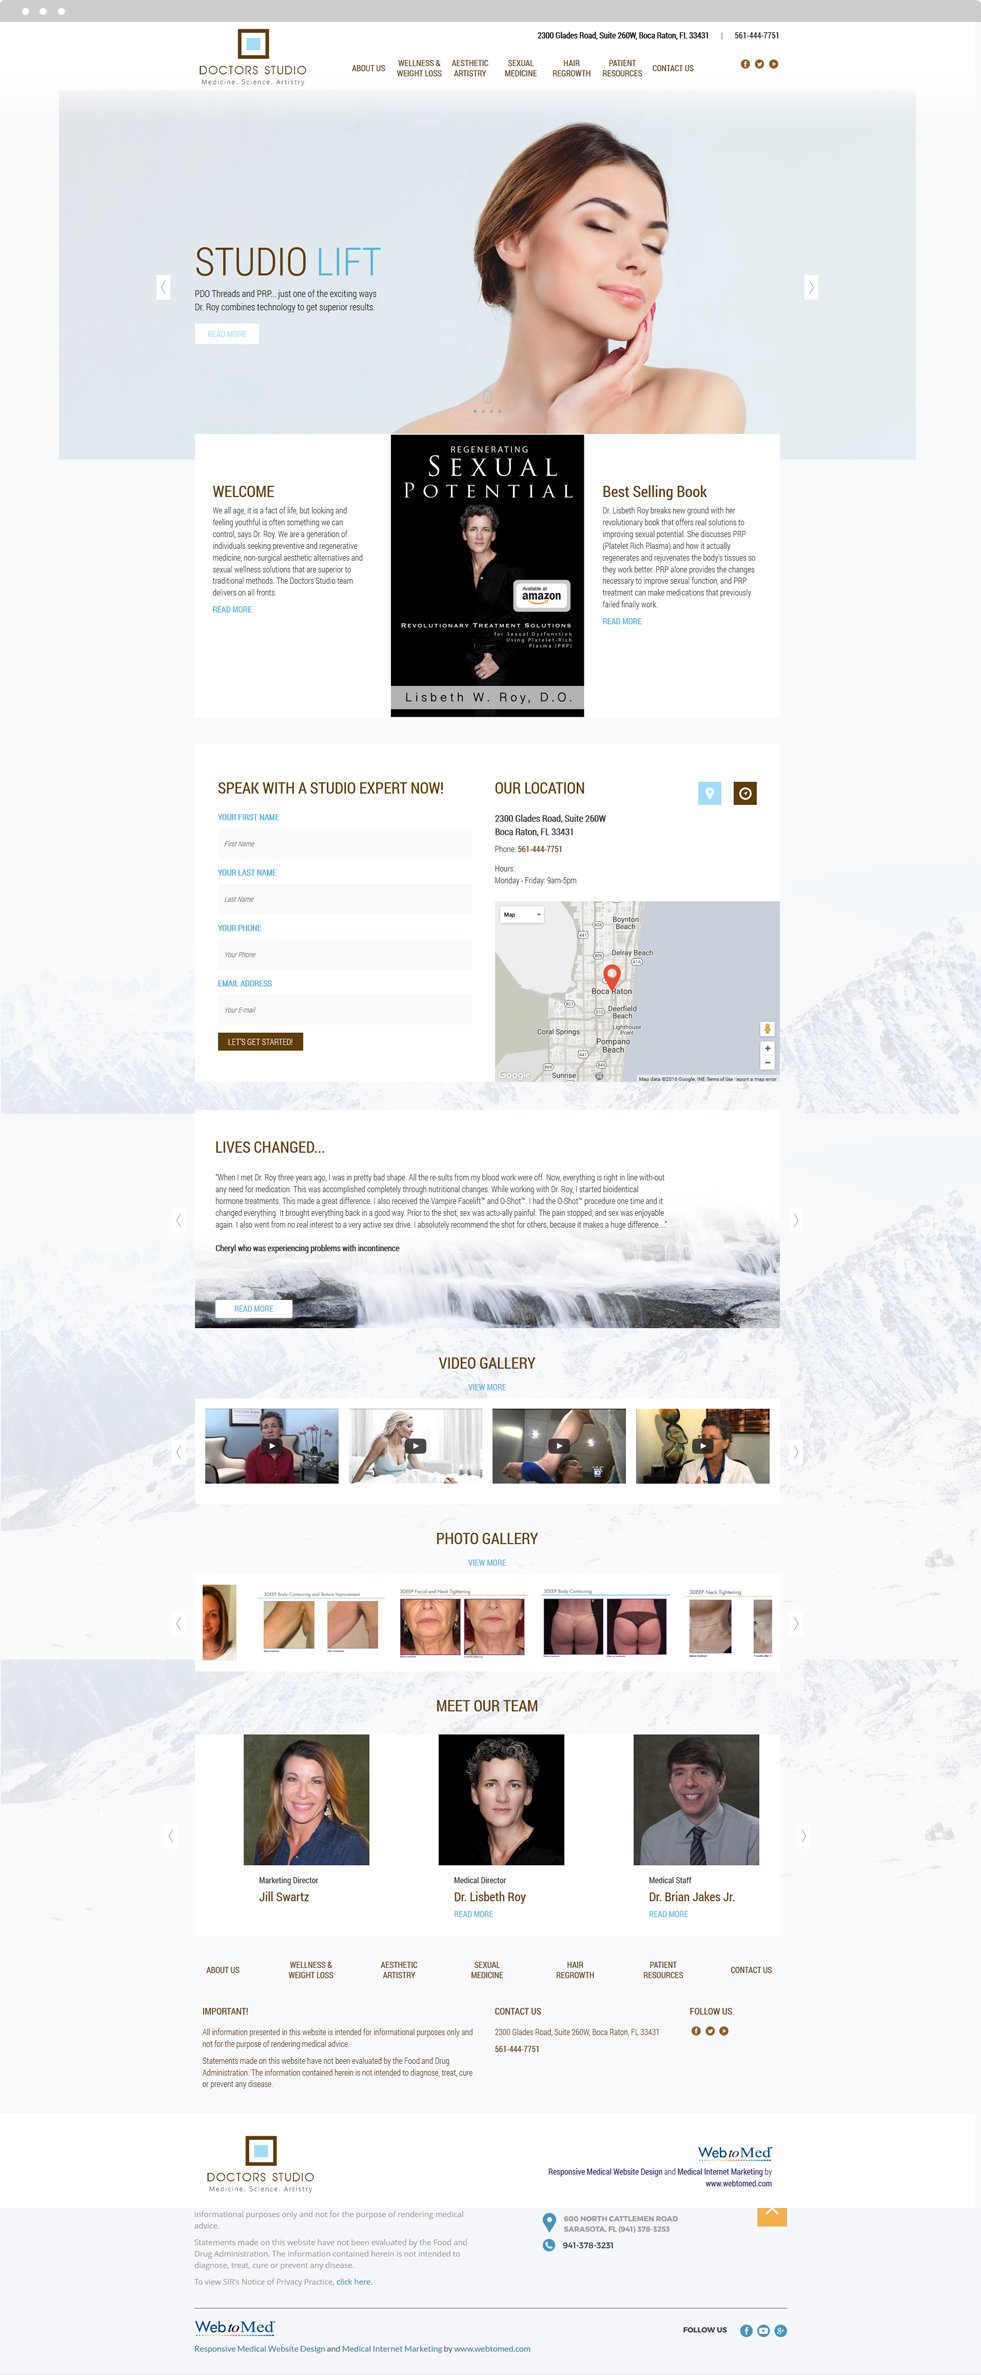 Functional Medicine Website Design - Doctor's Studio - Homepage